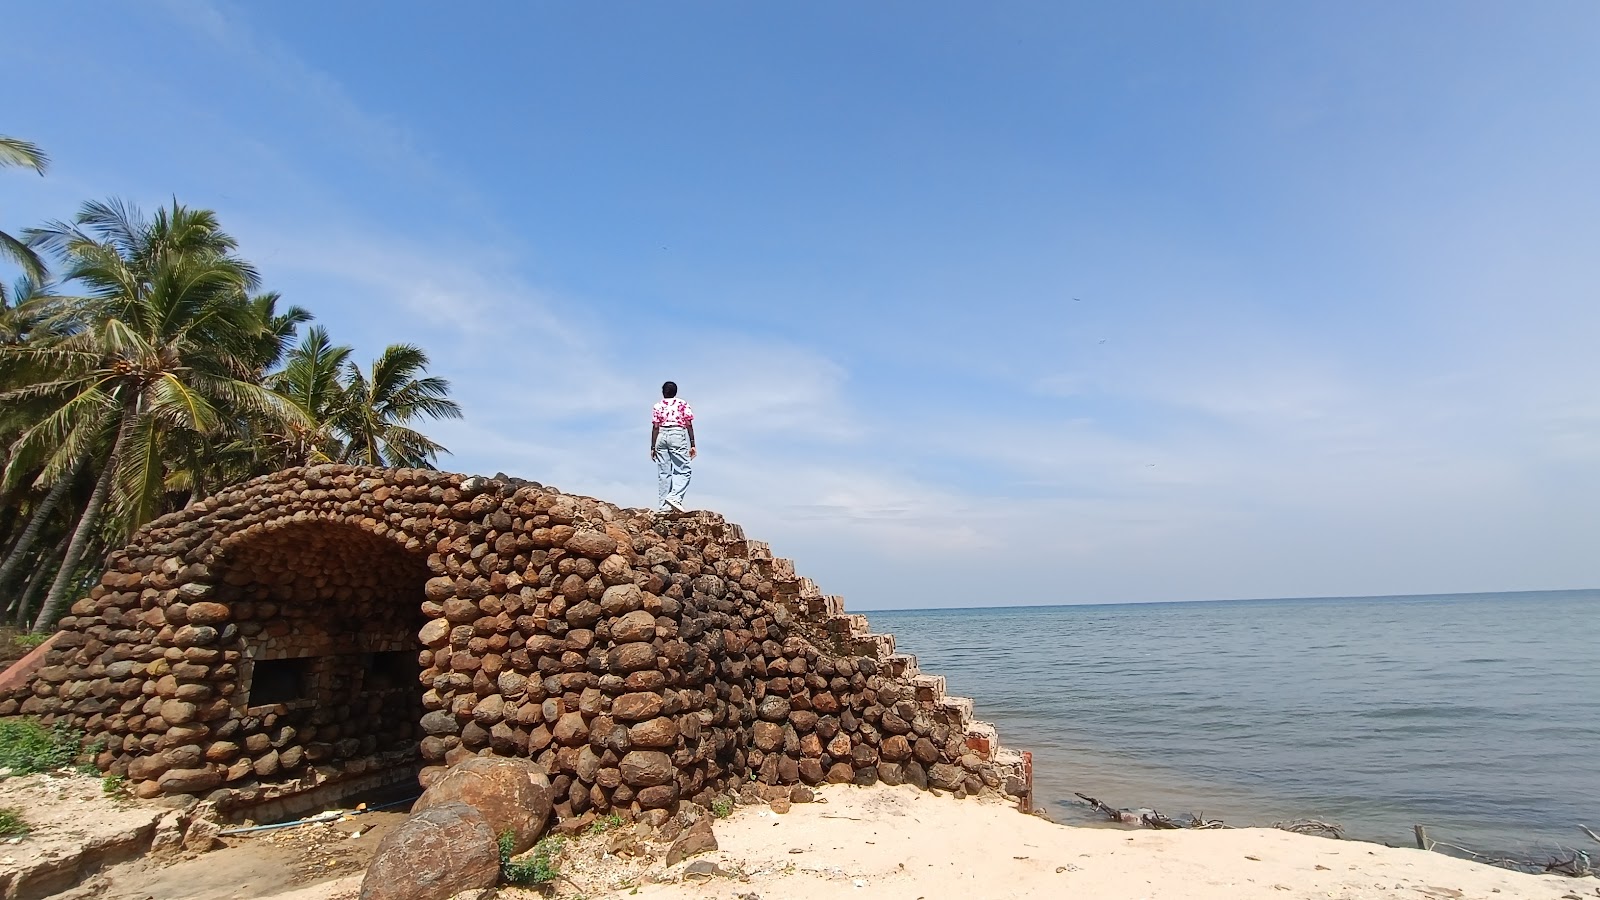 Foto de Sangumal Beach, Rameswaram - lugar popular entre os apreciadores de relaxamento